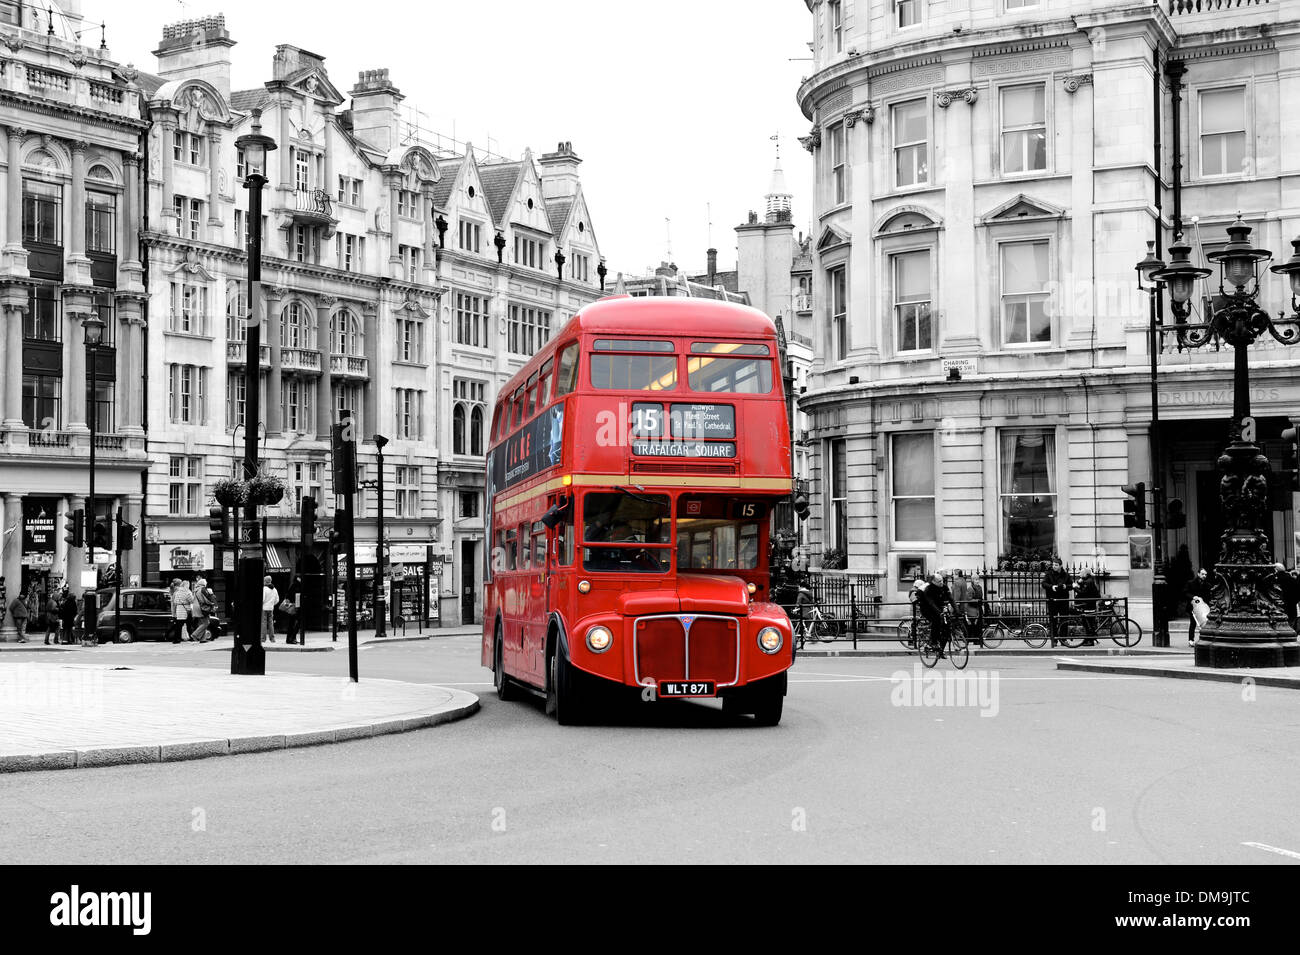 A Londra autobus Routemaster alla rotonda in Trafalgar Square Foto Stock